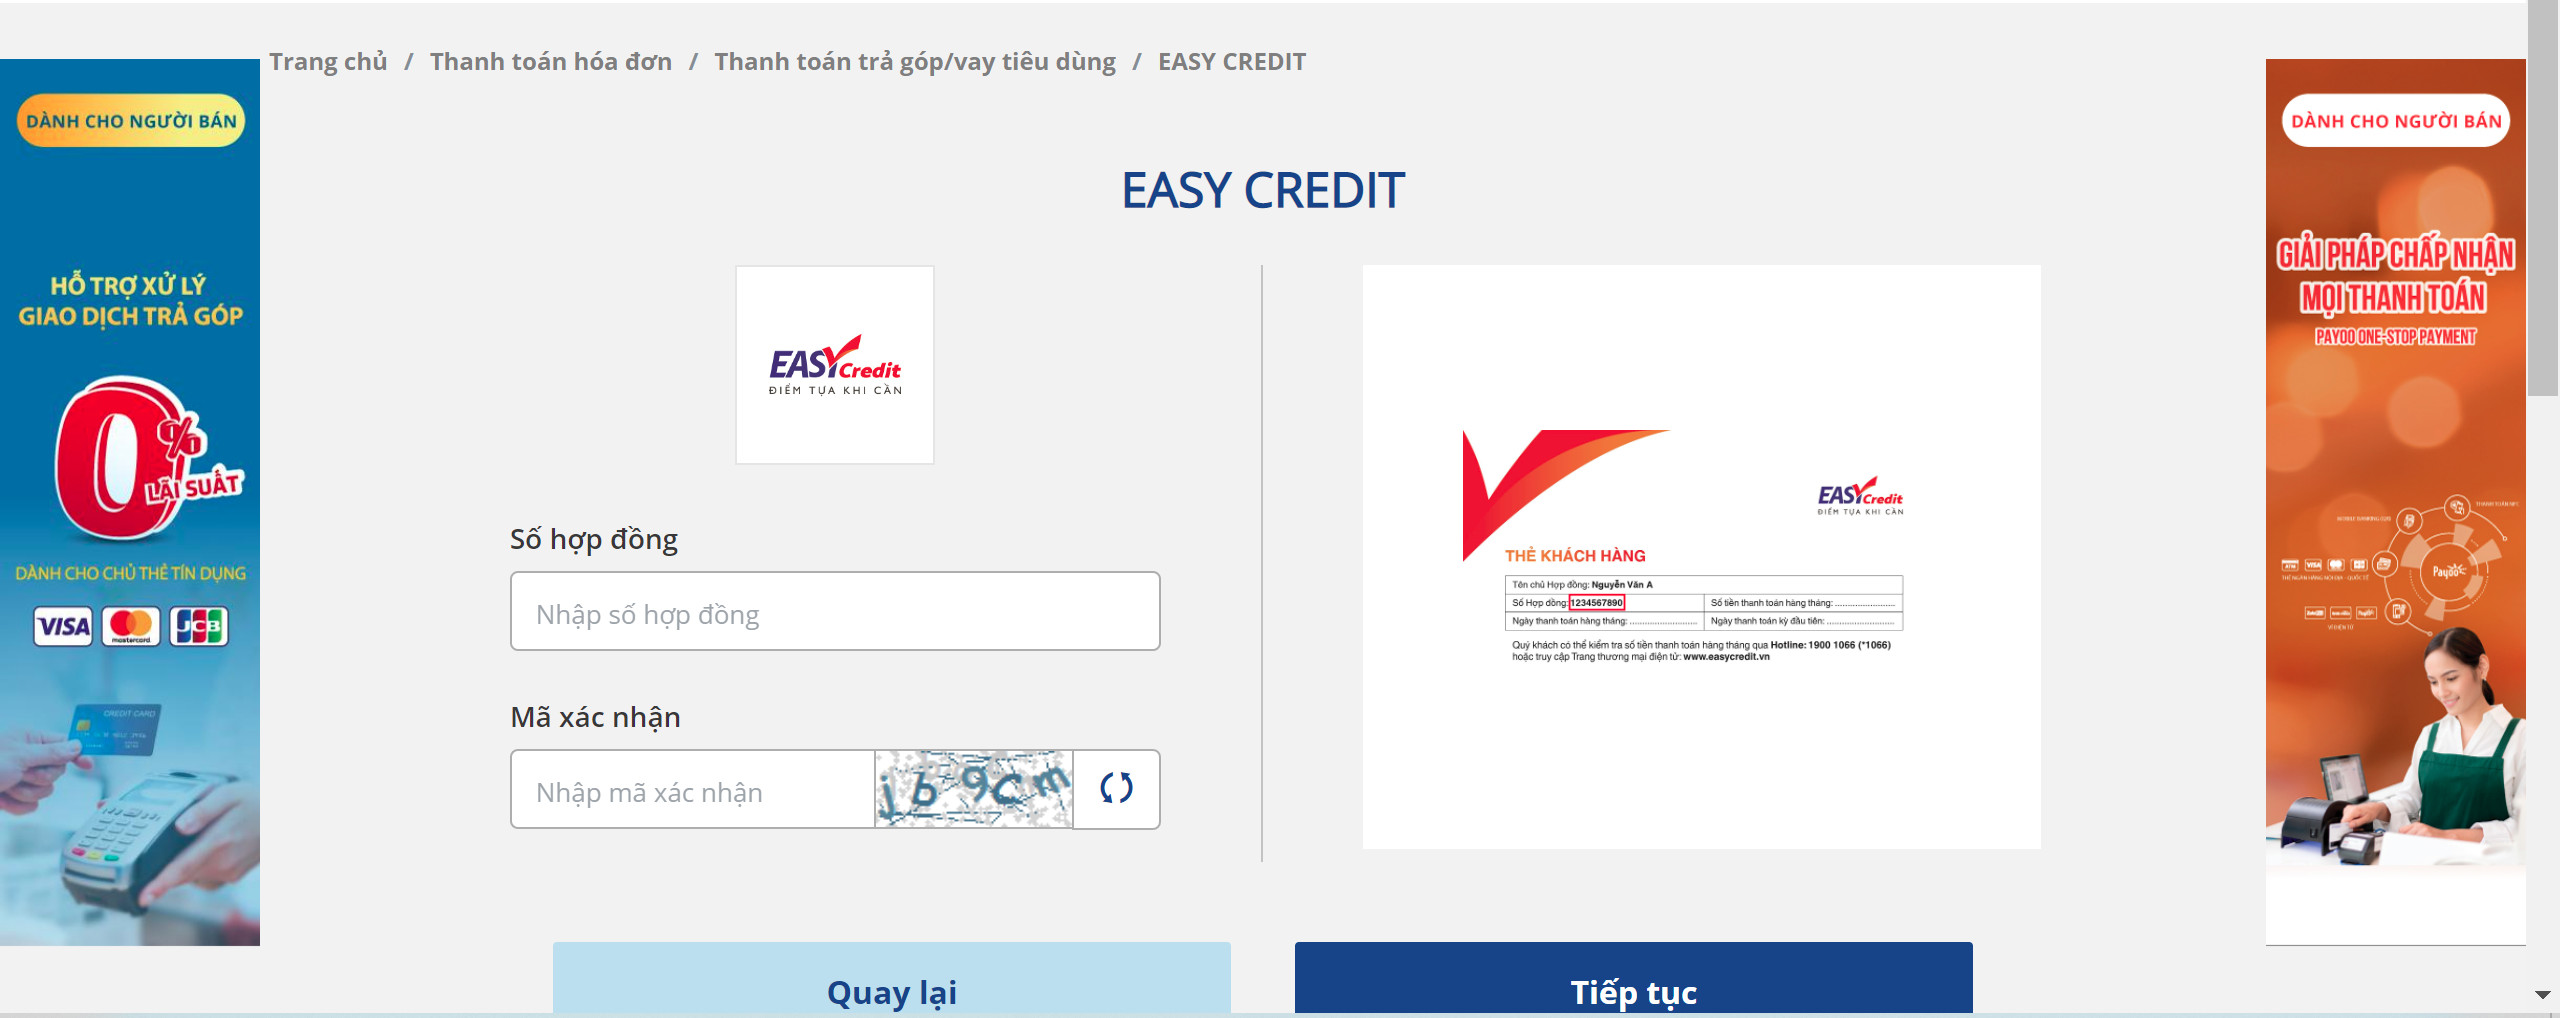 Tra cứu hợp đồng Easy Credit online qua Payoo